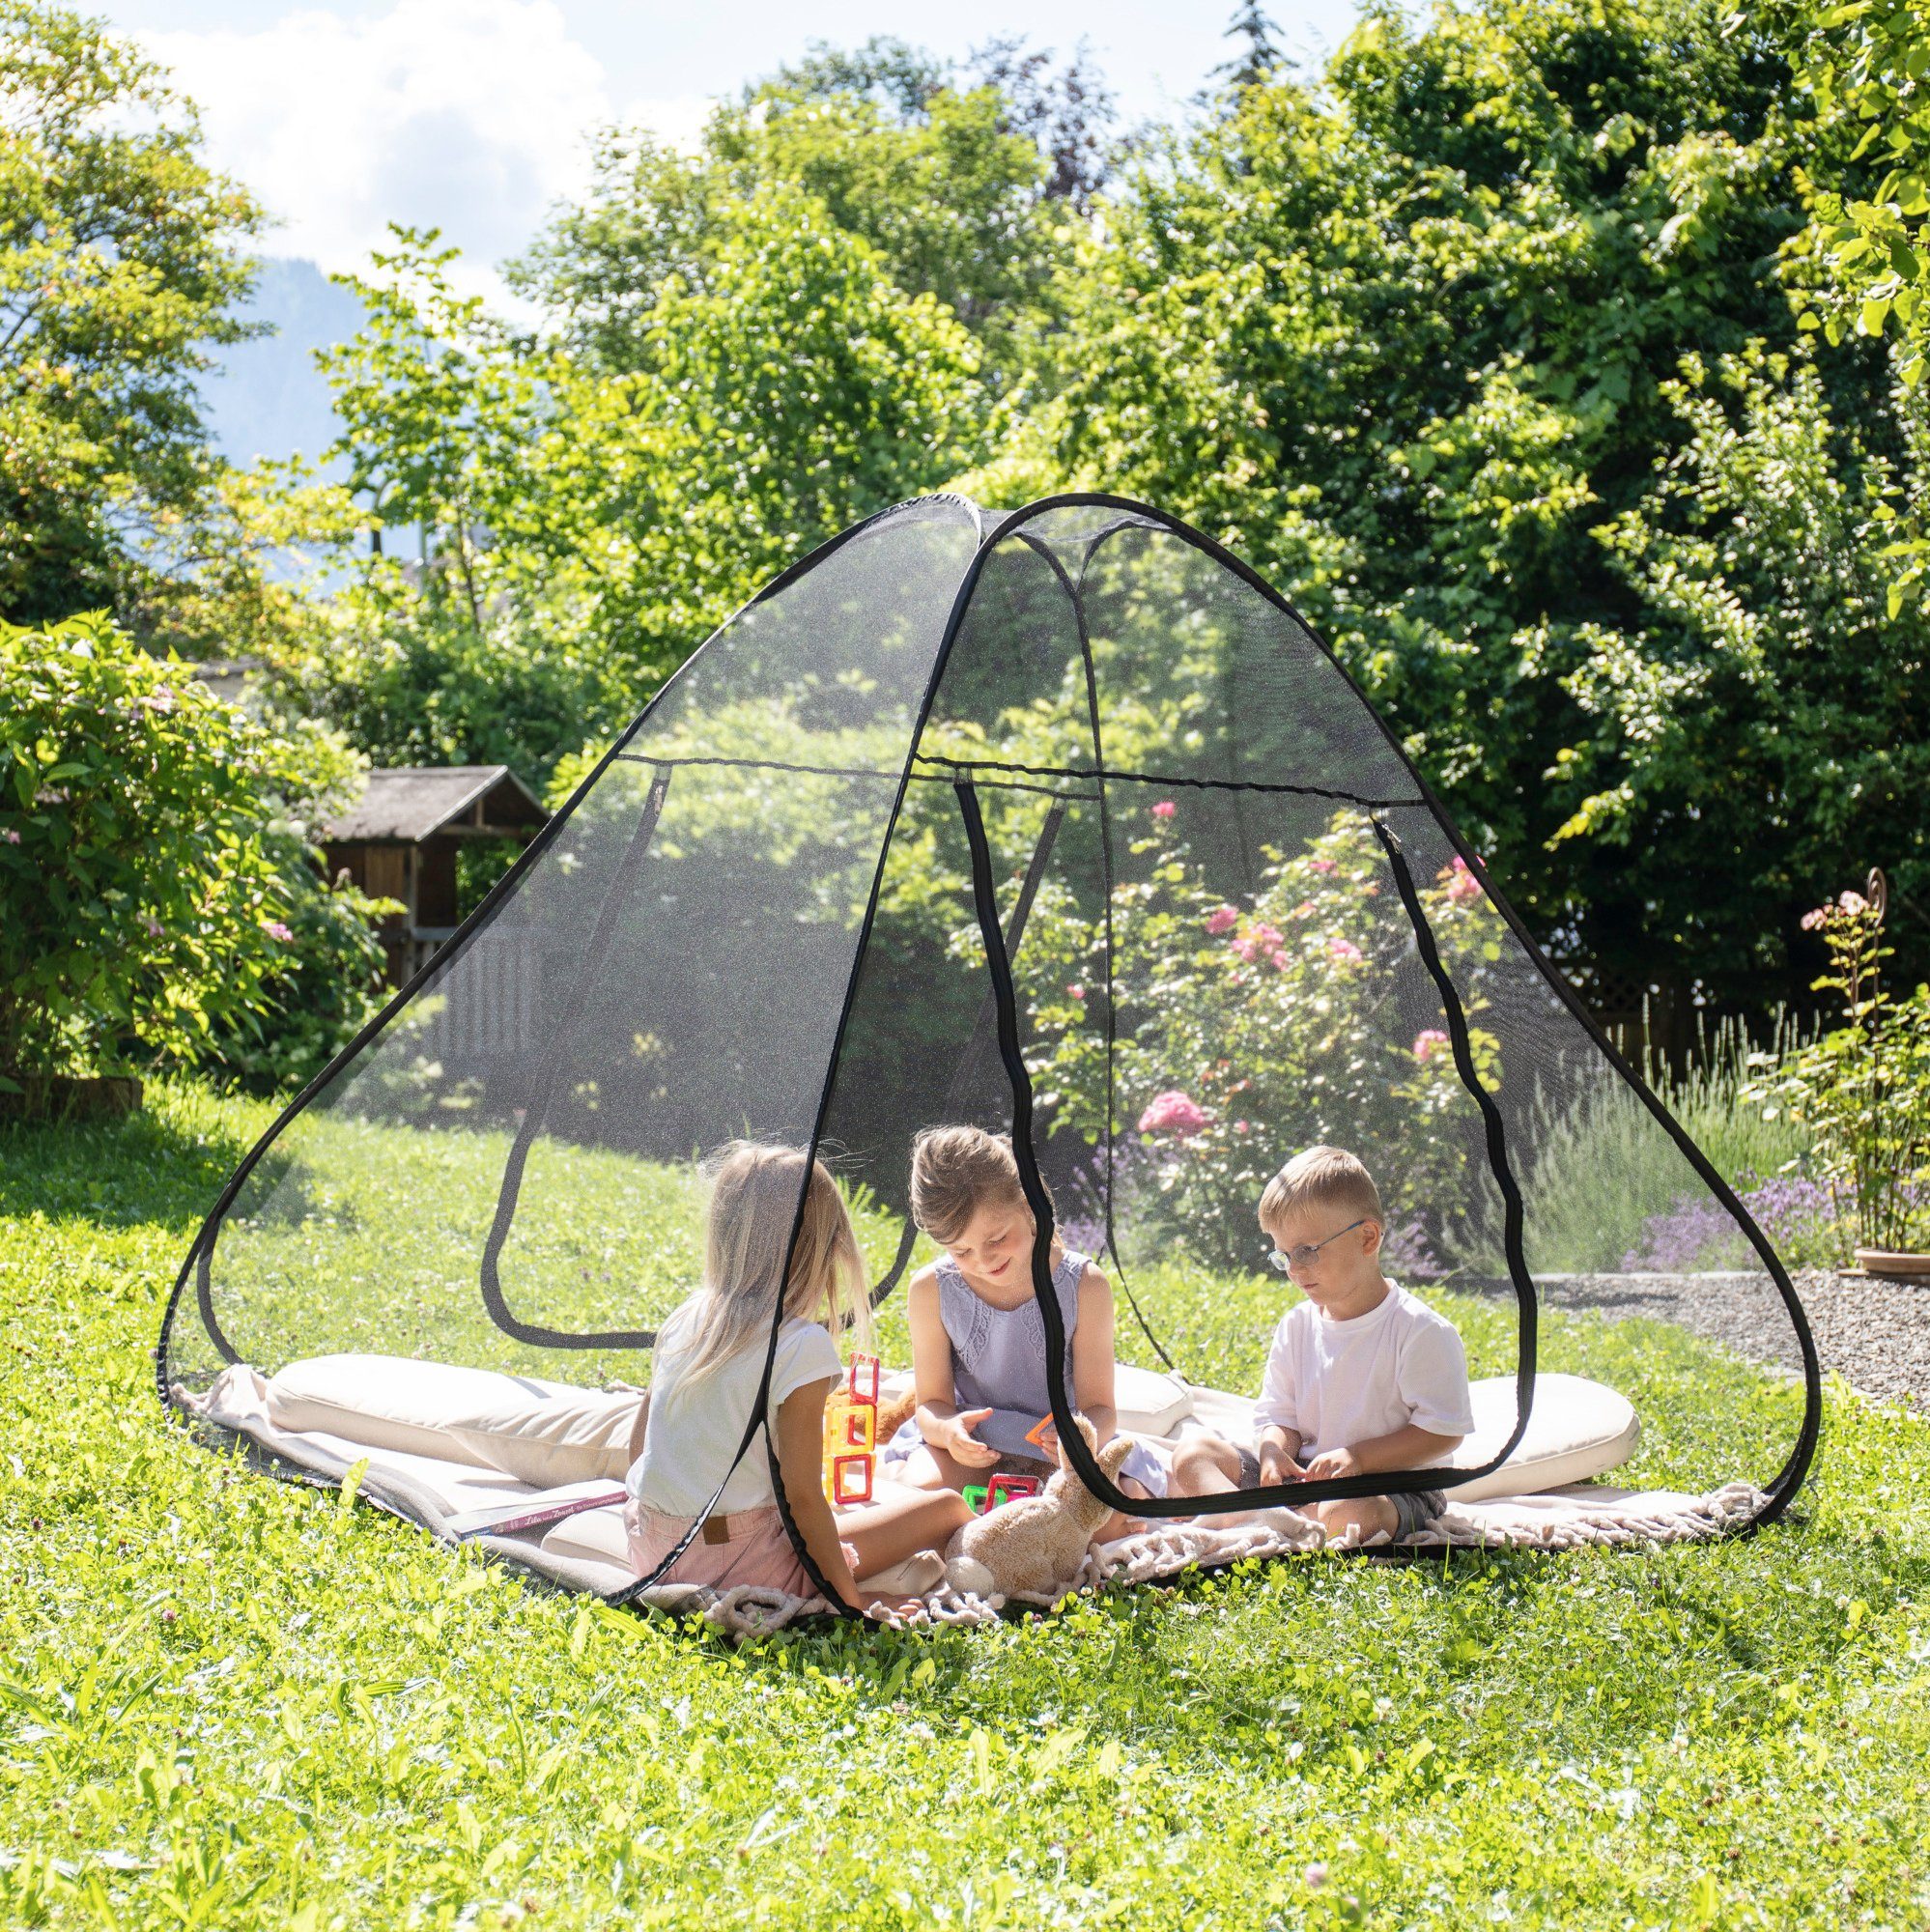 Moskitonetz Mückennetz Baldachin Outdoor Camping Oliv